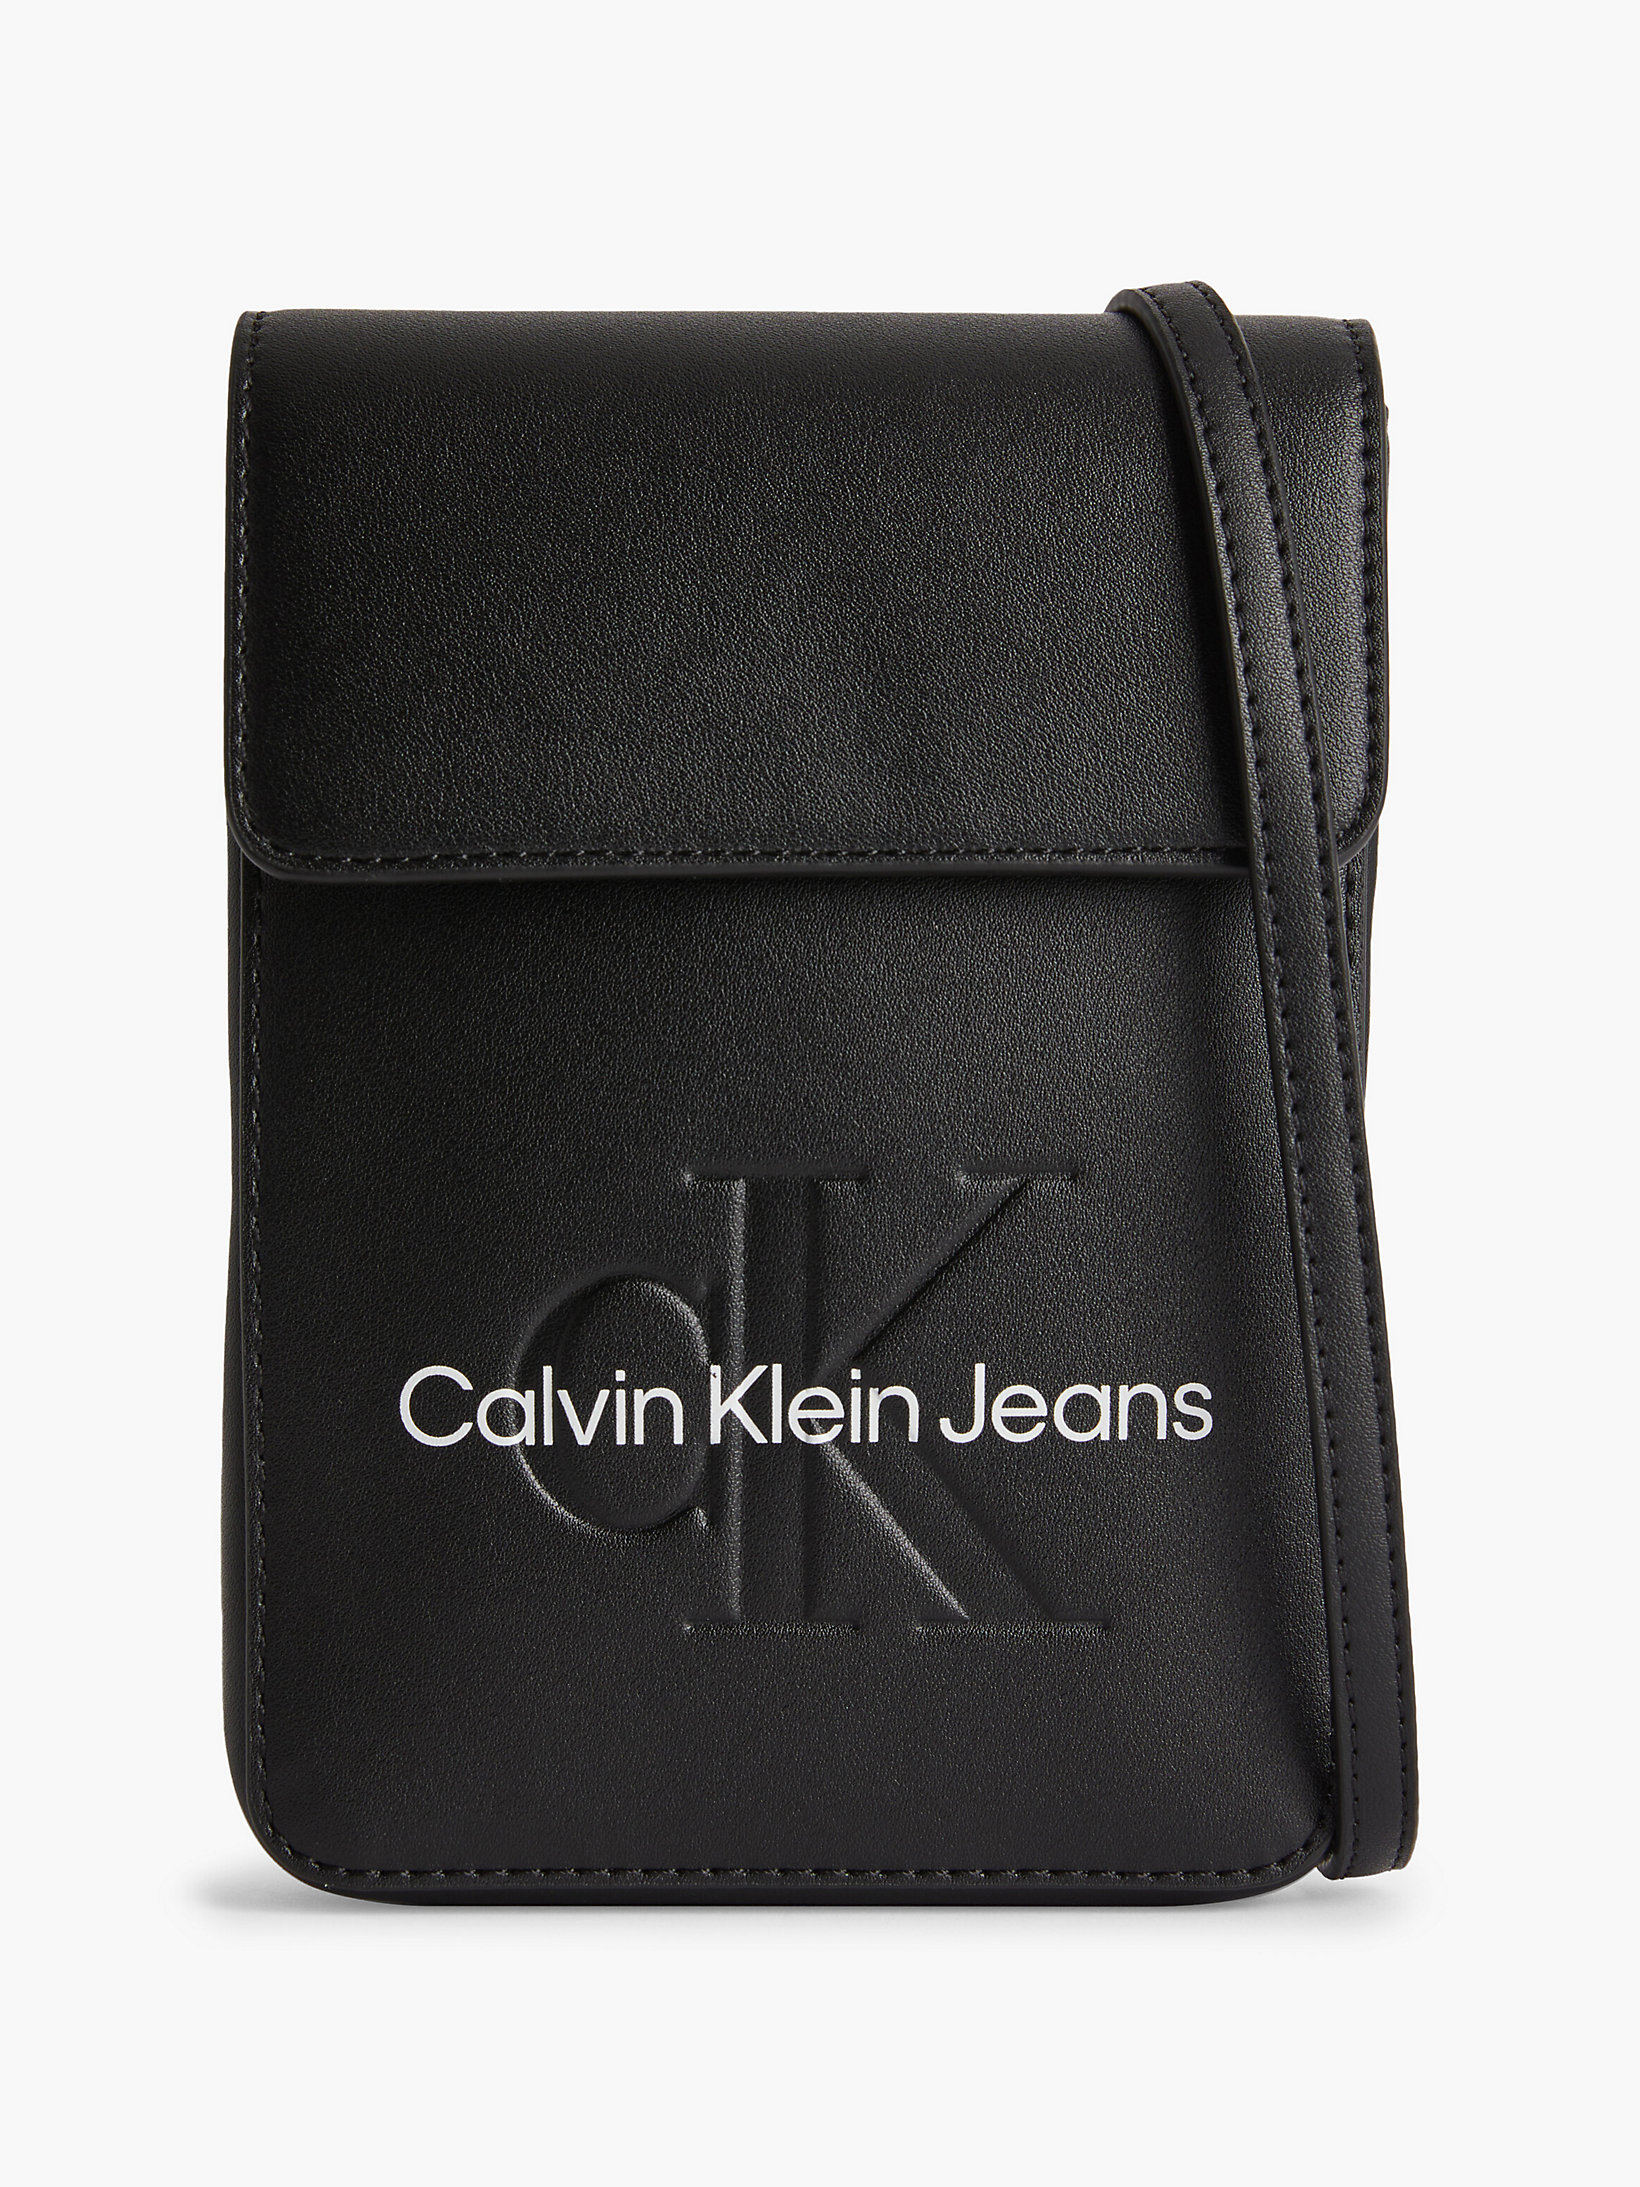 Black > Кисет для телефона через плечо > undefined Женщины - Calvin Klein